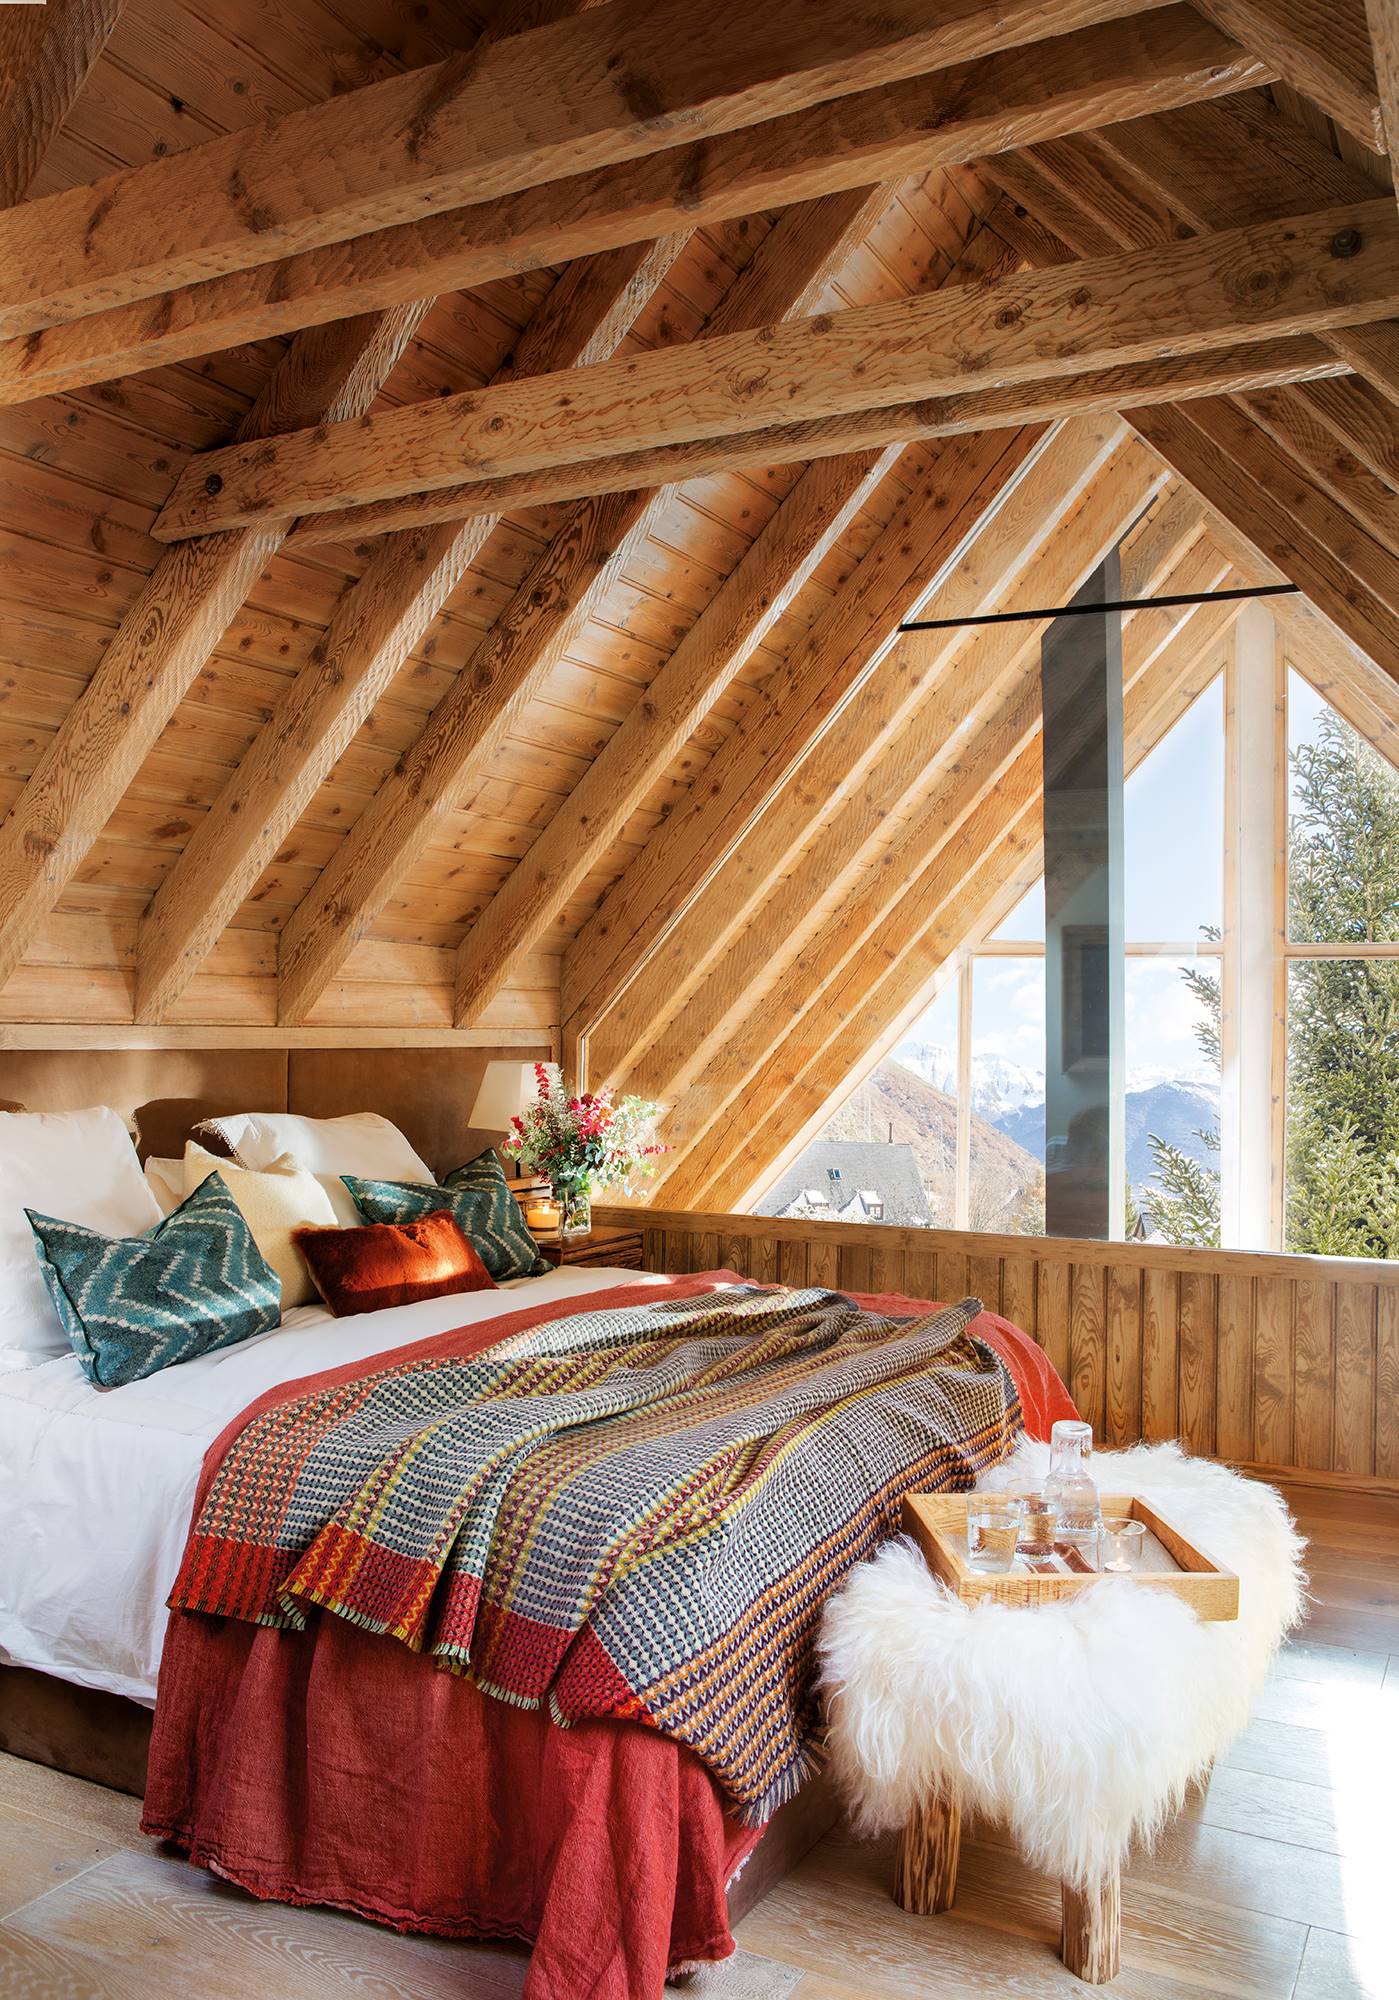 Dormitorio de montaña rústico con techo de madera y banco con manta de pelo a los pies de la cama 00474910